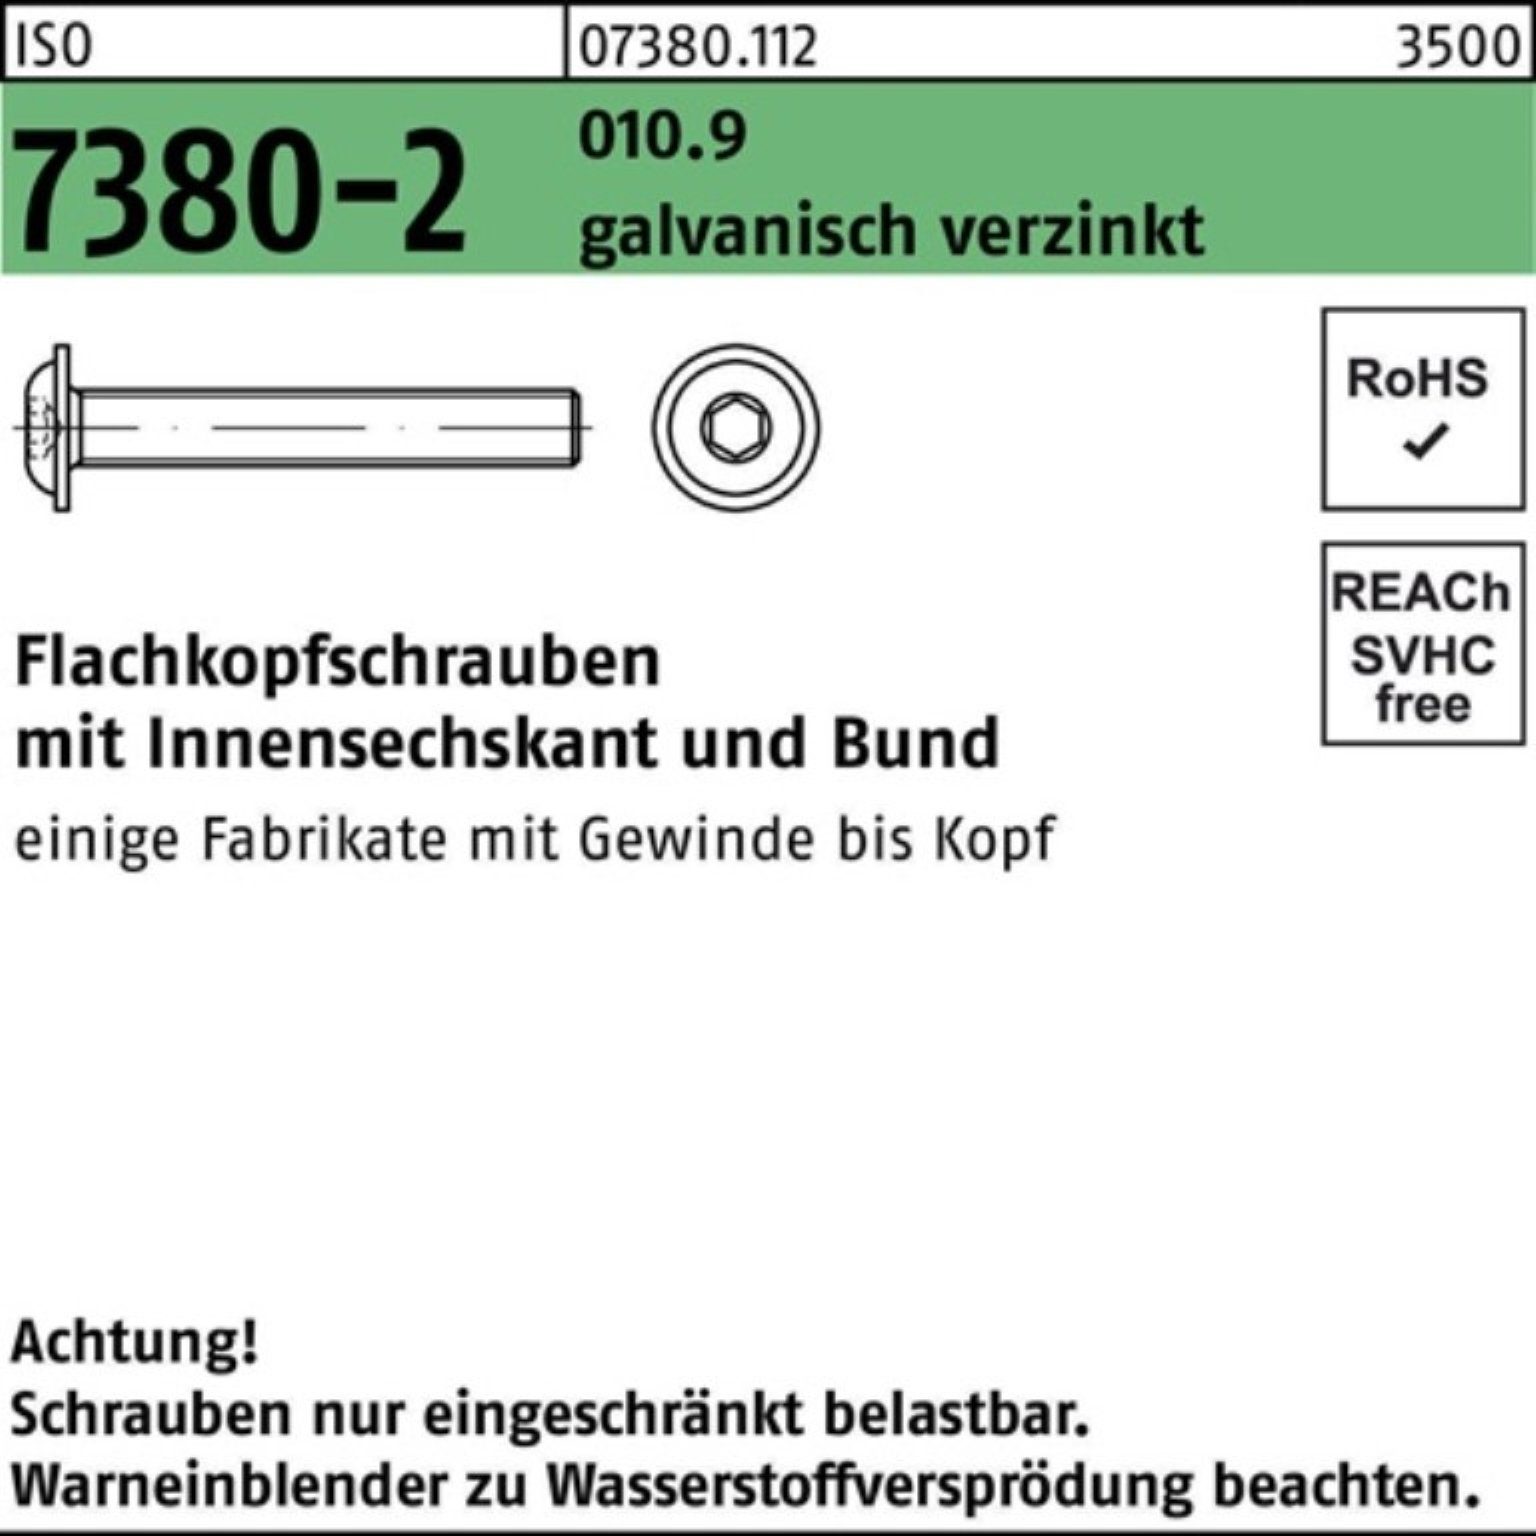 Flachkopfschraube Pack Schraube Bund/Innen-6kt 7380-2 M4x25 500er gal 010.9 ISO Reyher